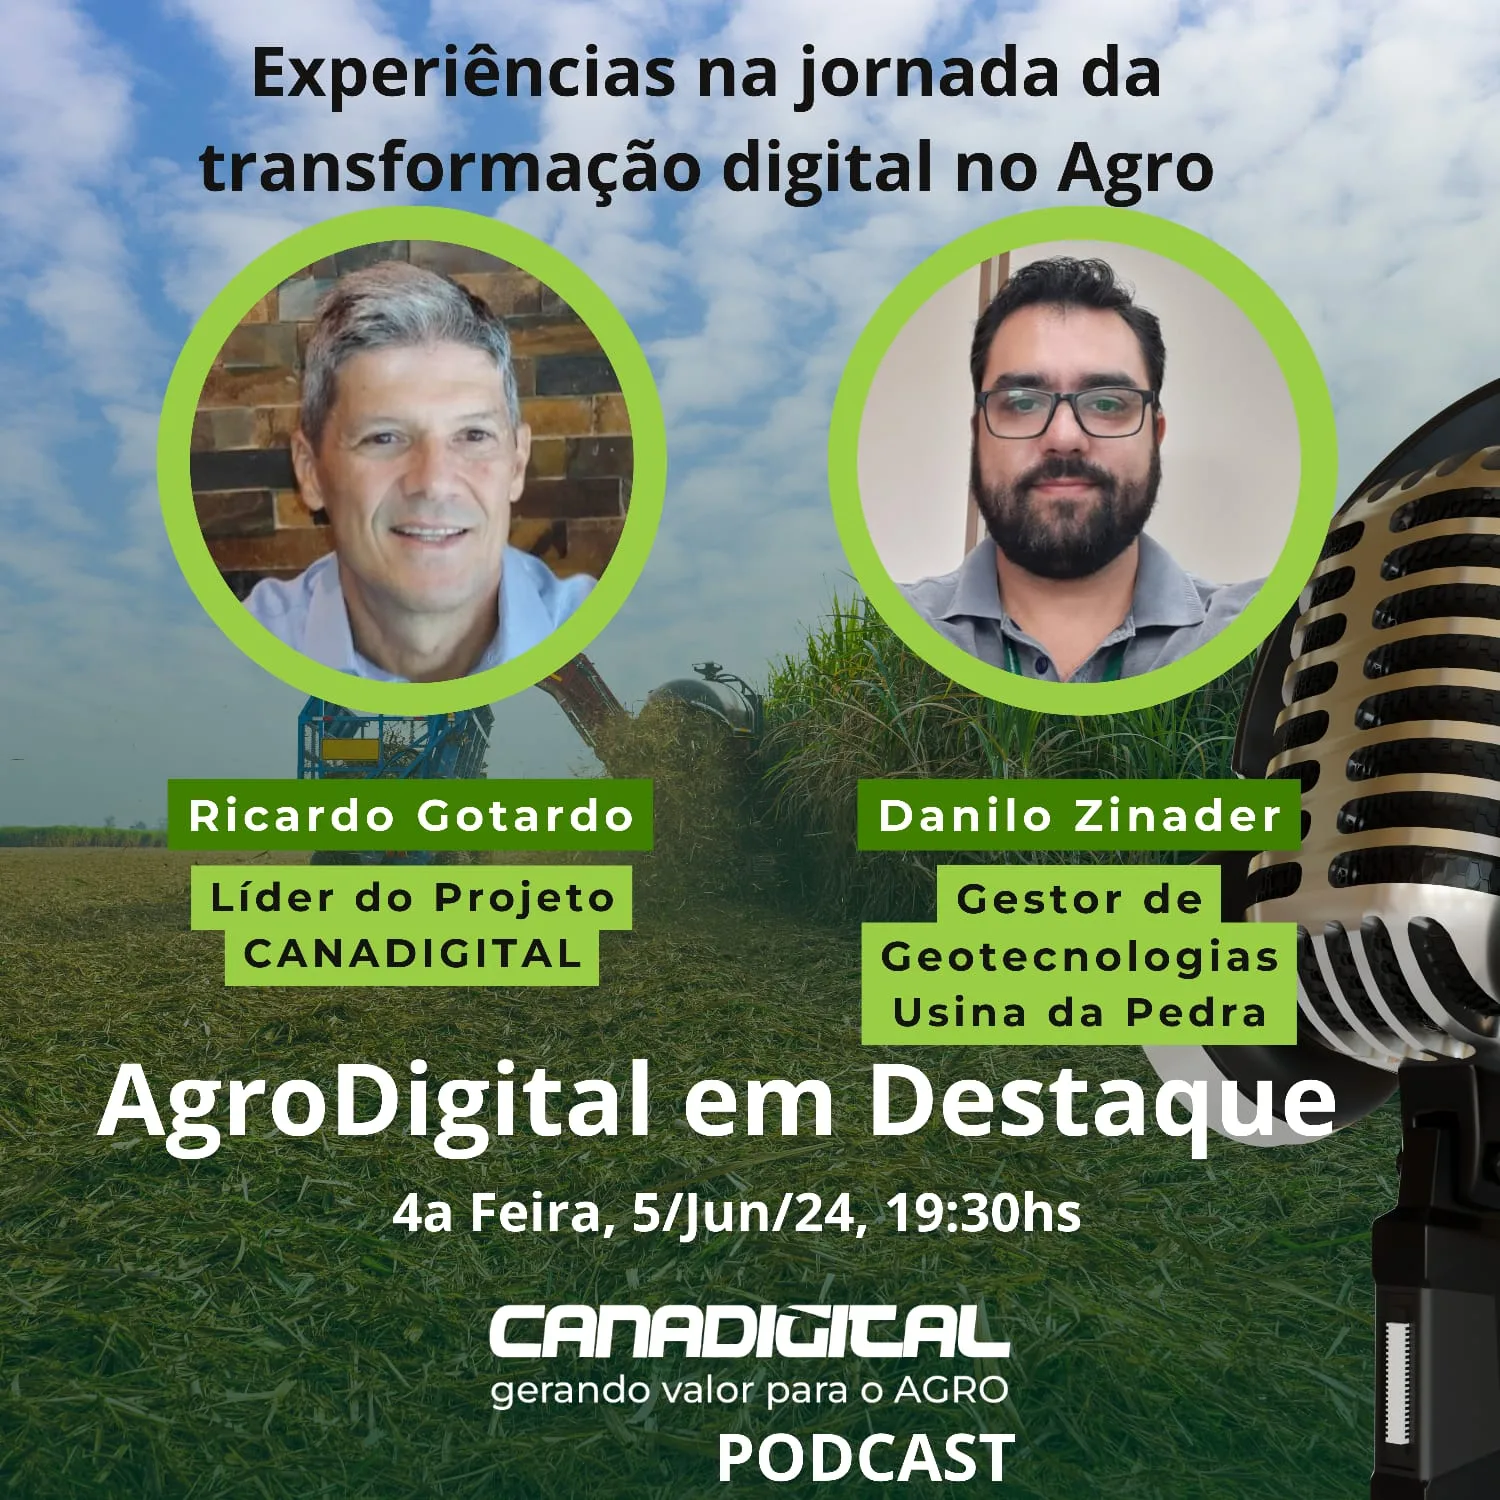 Podcast CanaDigital estreia com gestor da Usina da Pedra